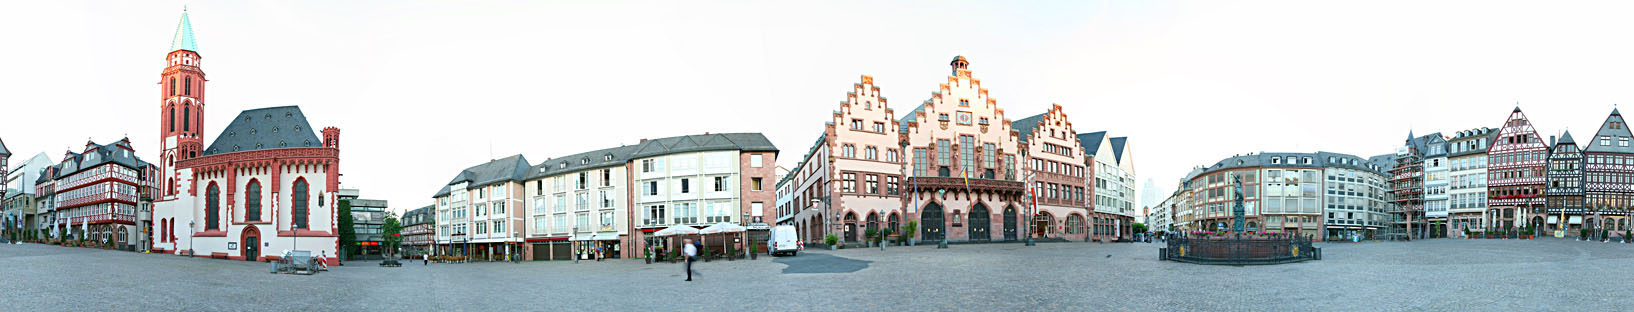 Rathaus Frankfurt am Main  